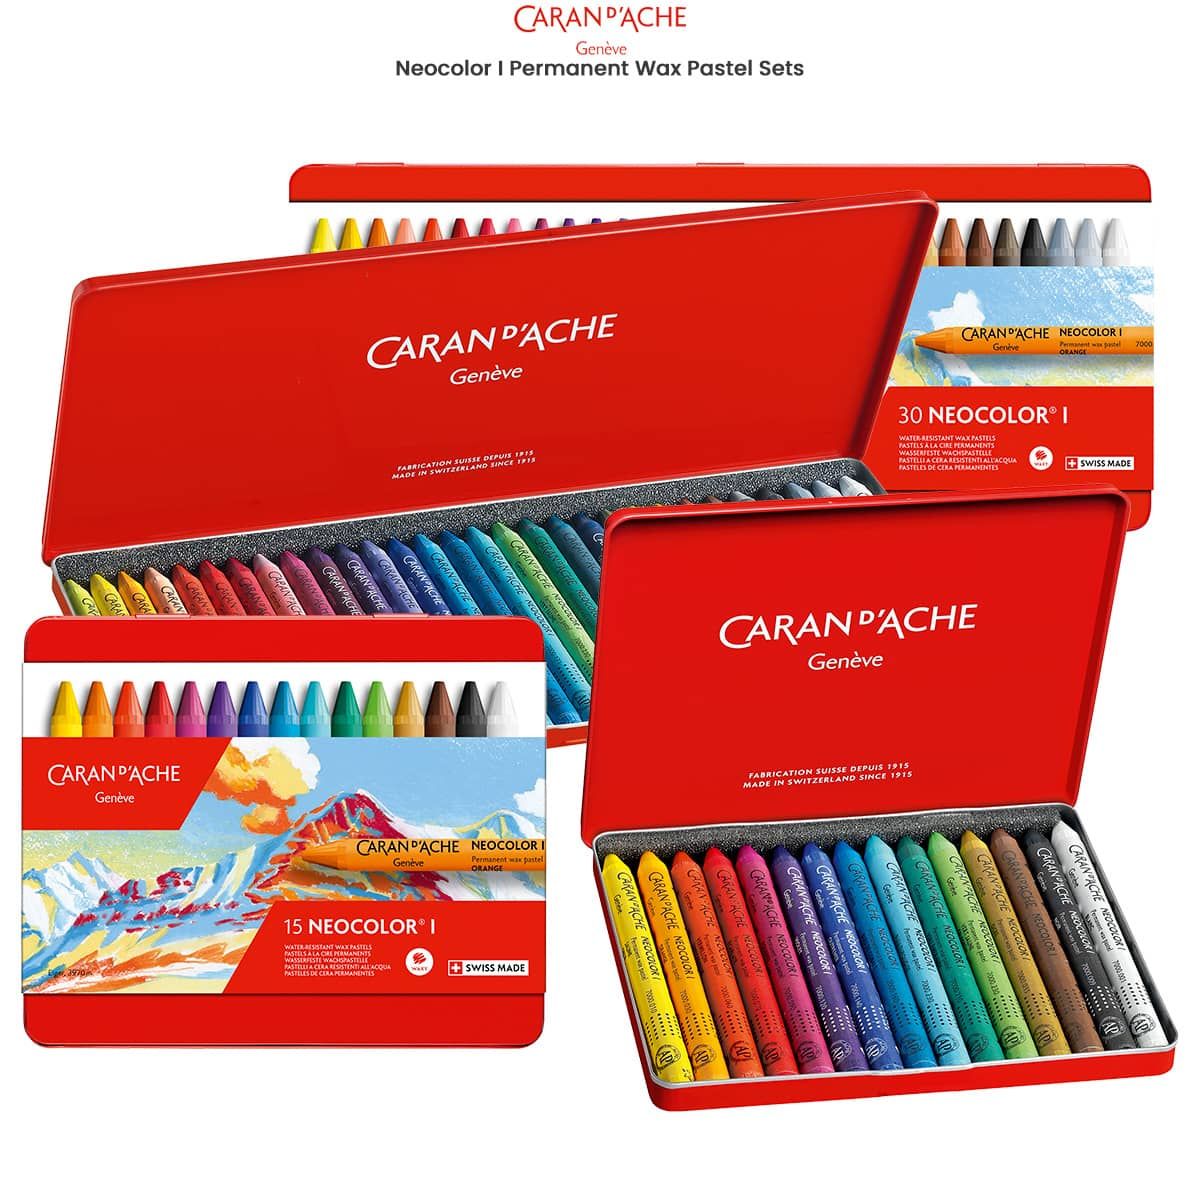 Caran d'Ache Neocolor I Set of 10 Metallic Wax Oil Crayons Pastels